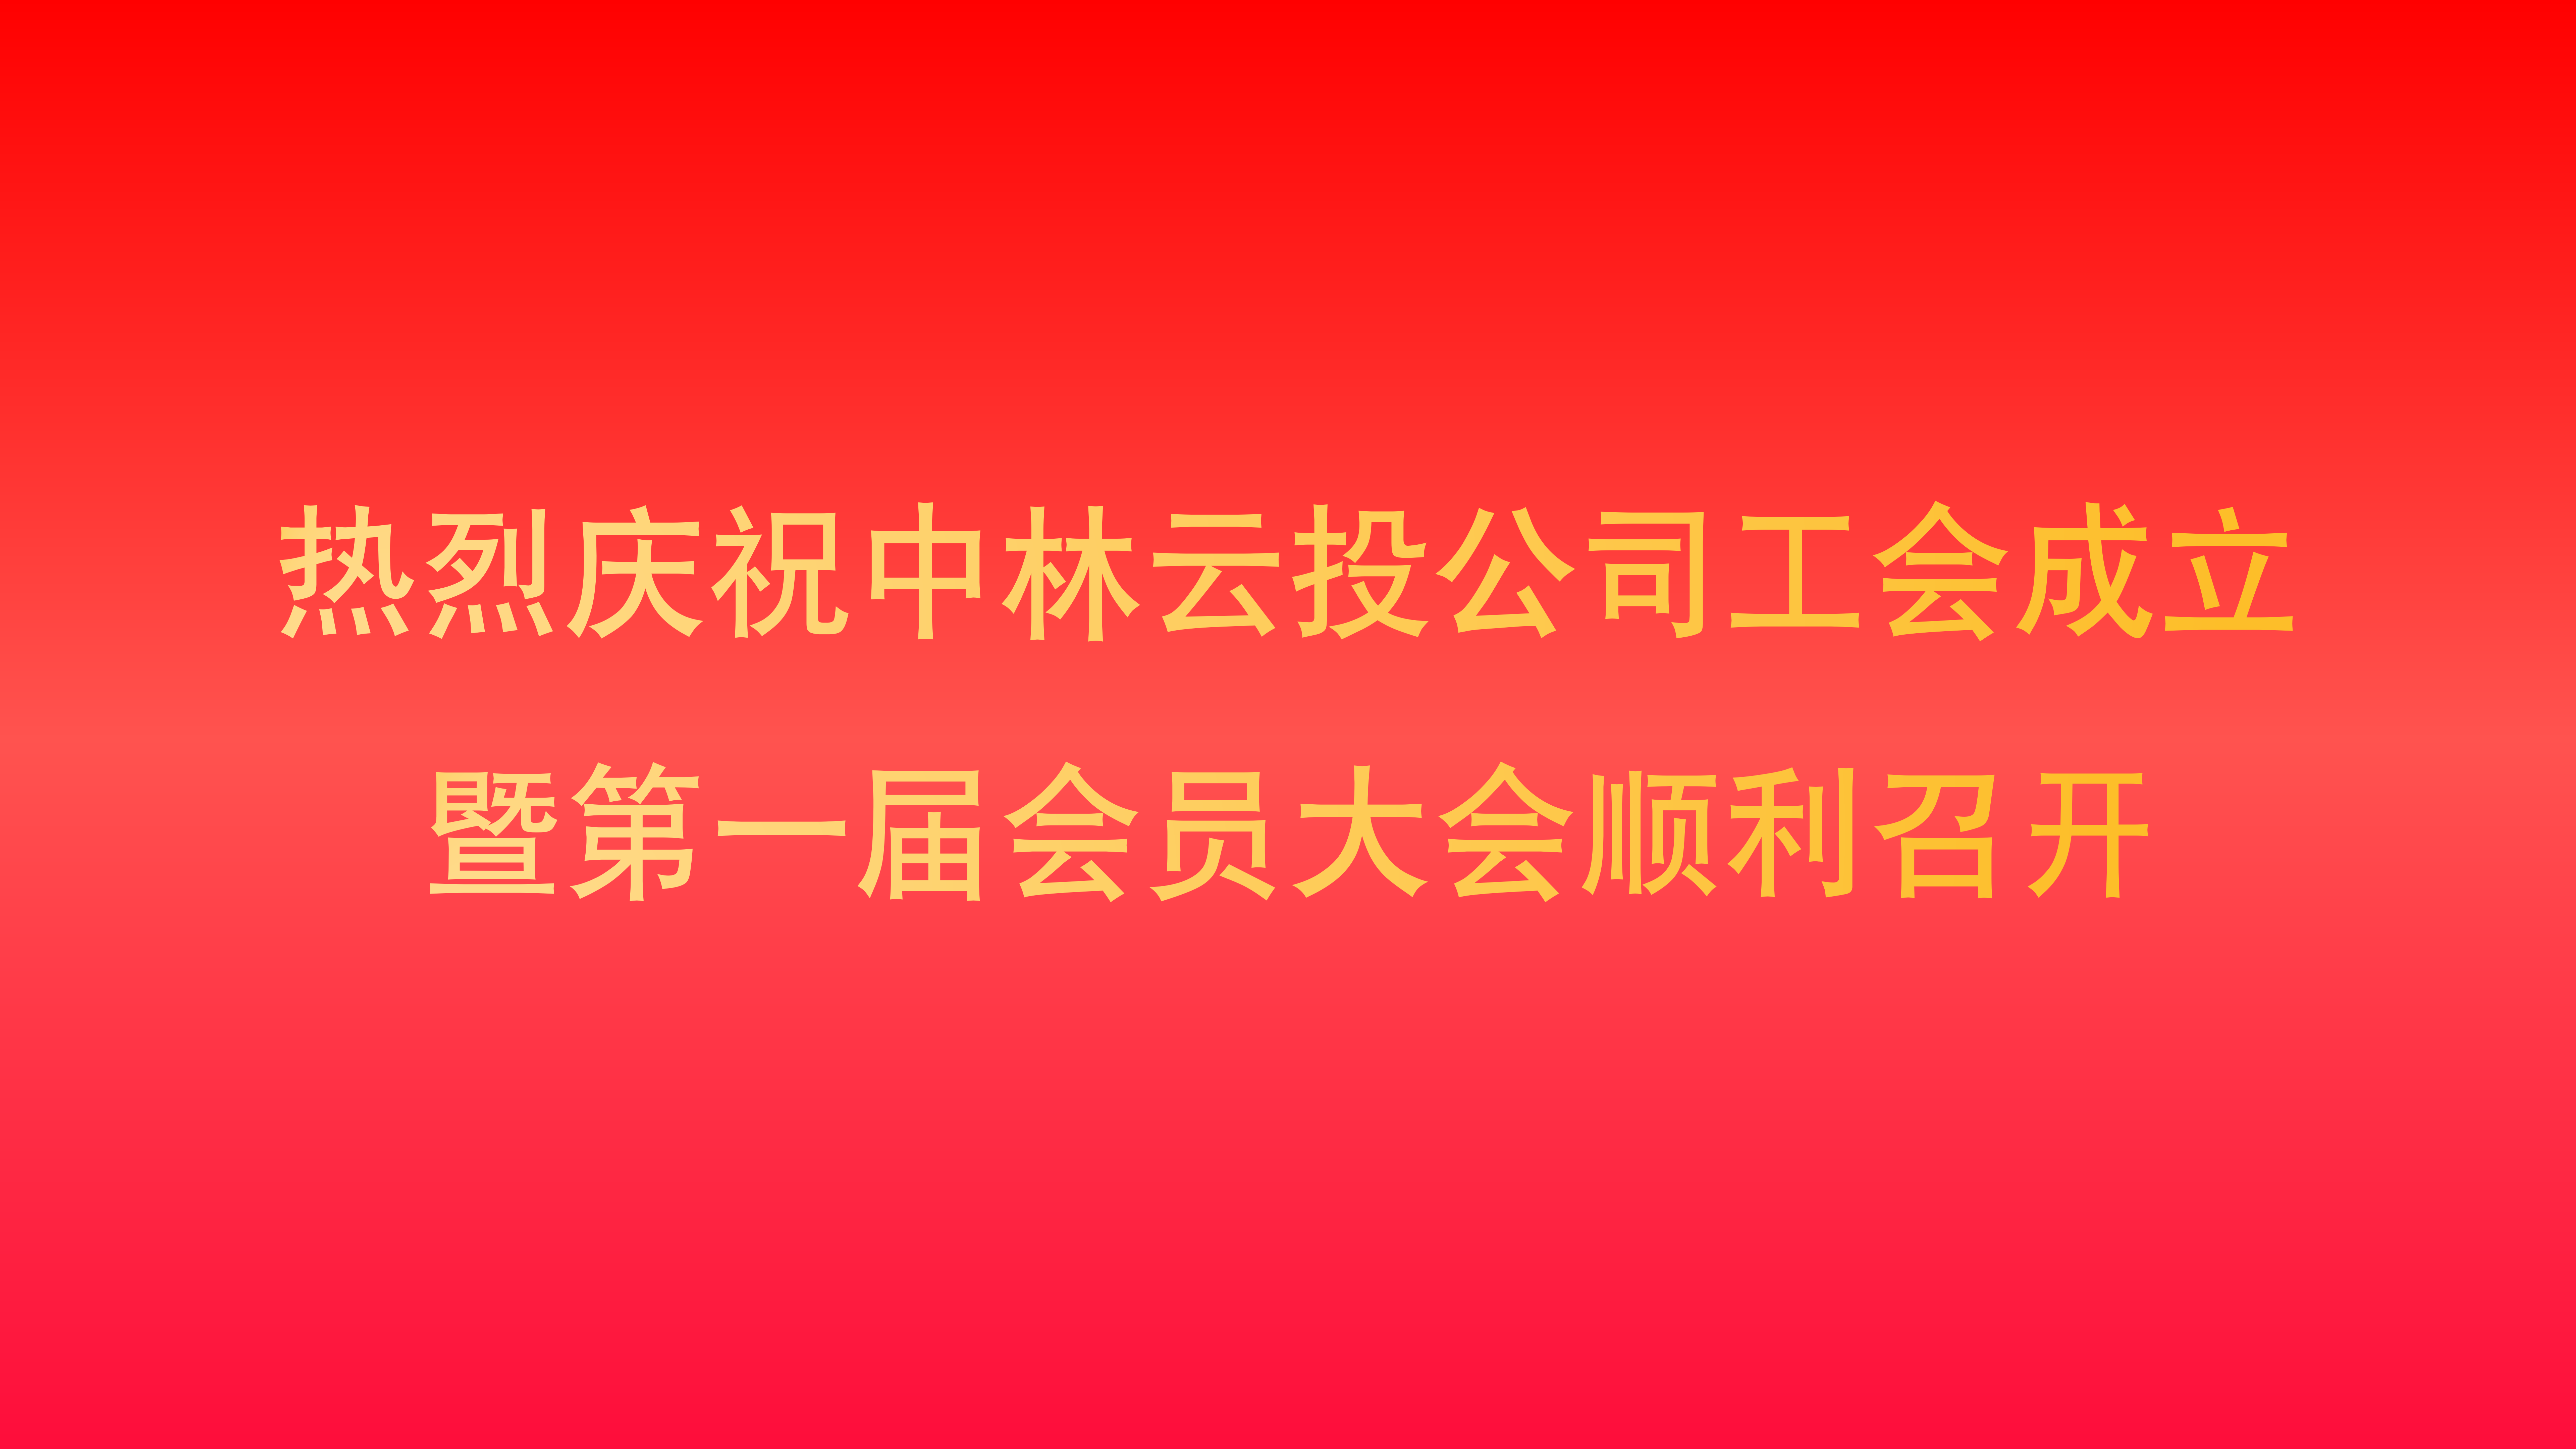 中林云投公司成立工会并召开工会第一届会员大会